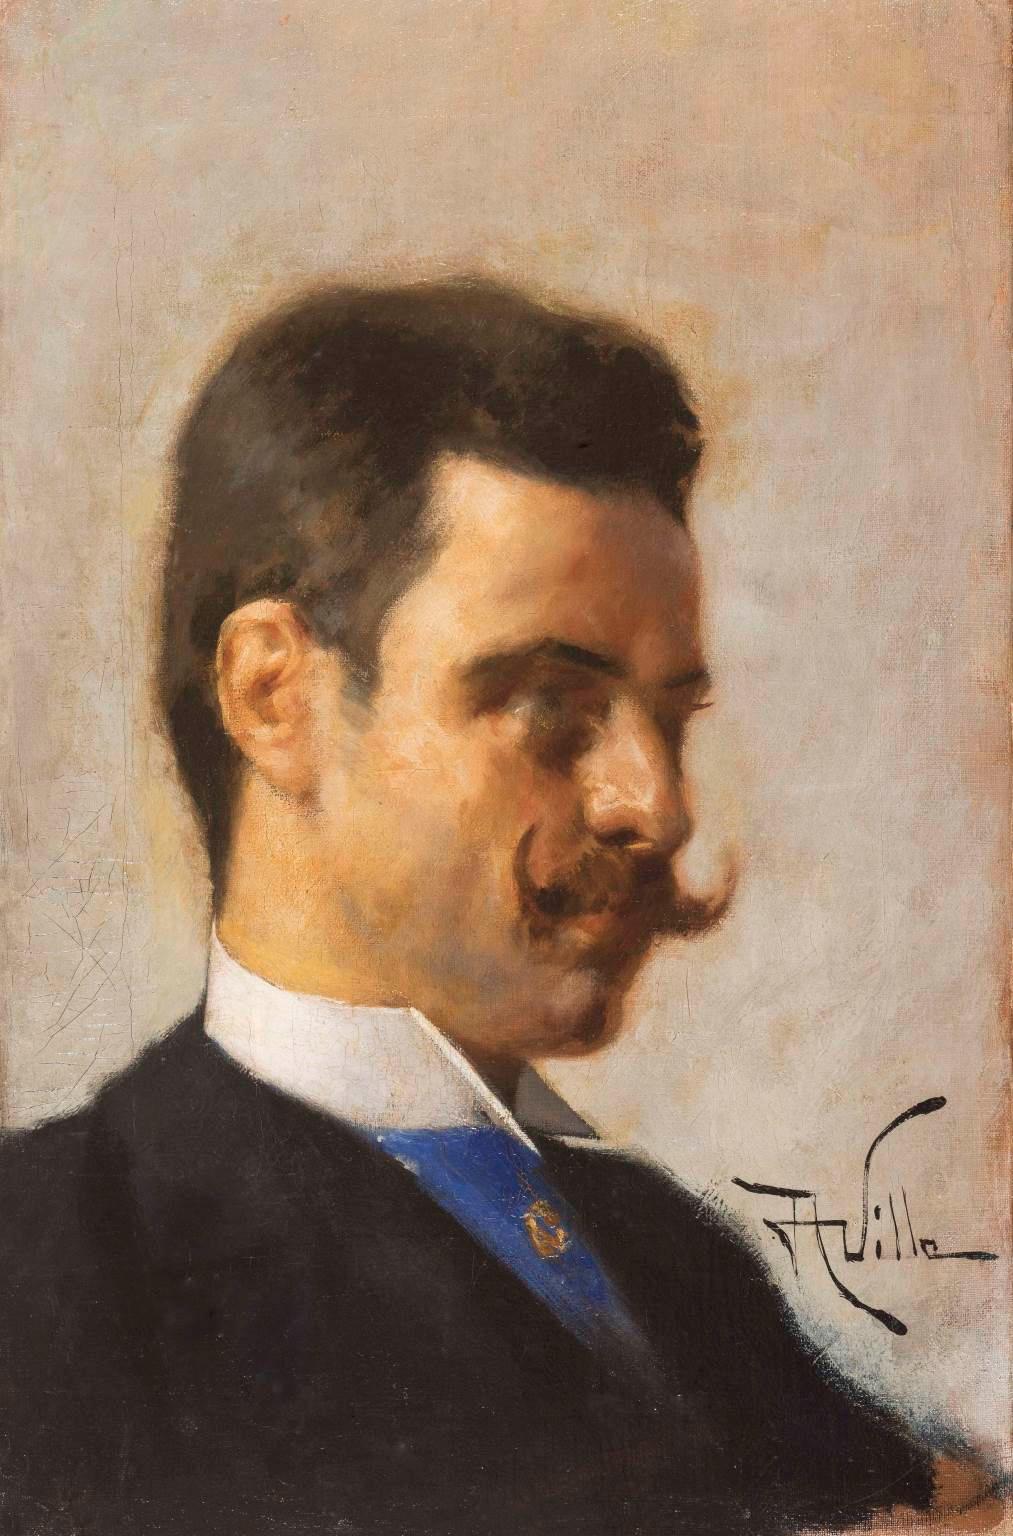 Portrait Painting Aleardo Villa - Portrait masculin de Villa Moustache sur toile à l'huile signée Aleardo, 1890